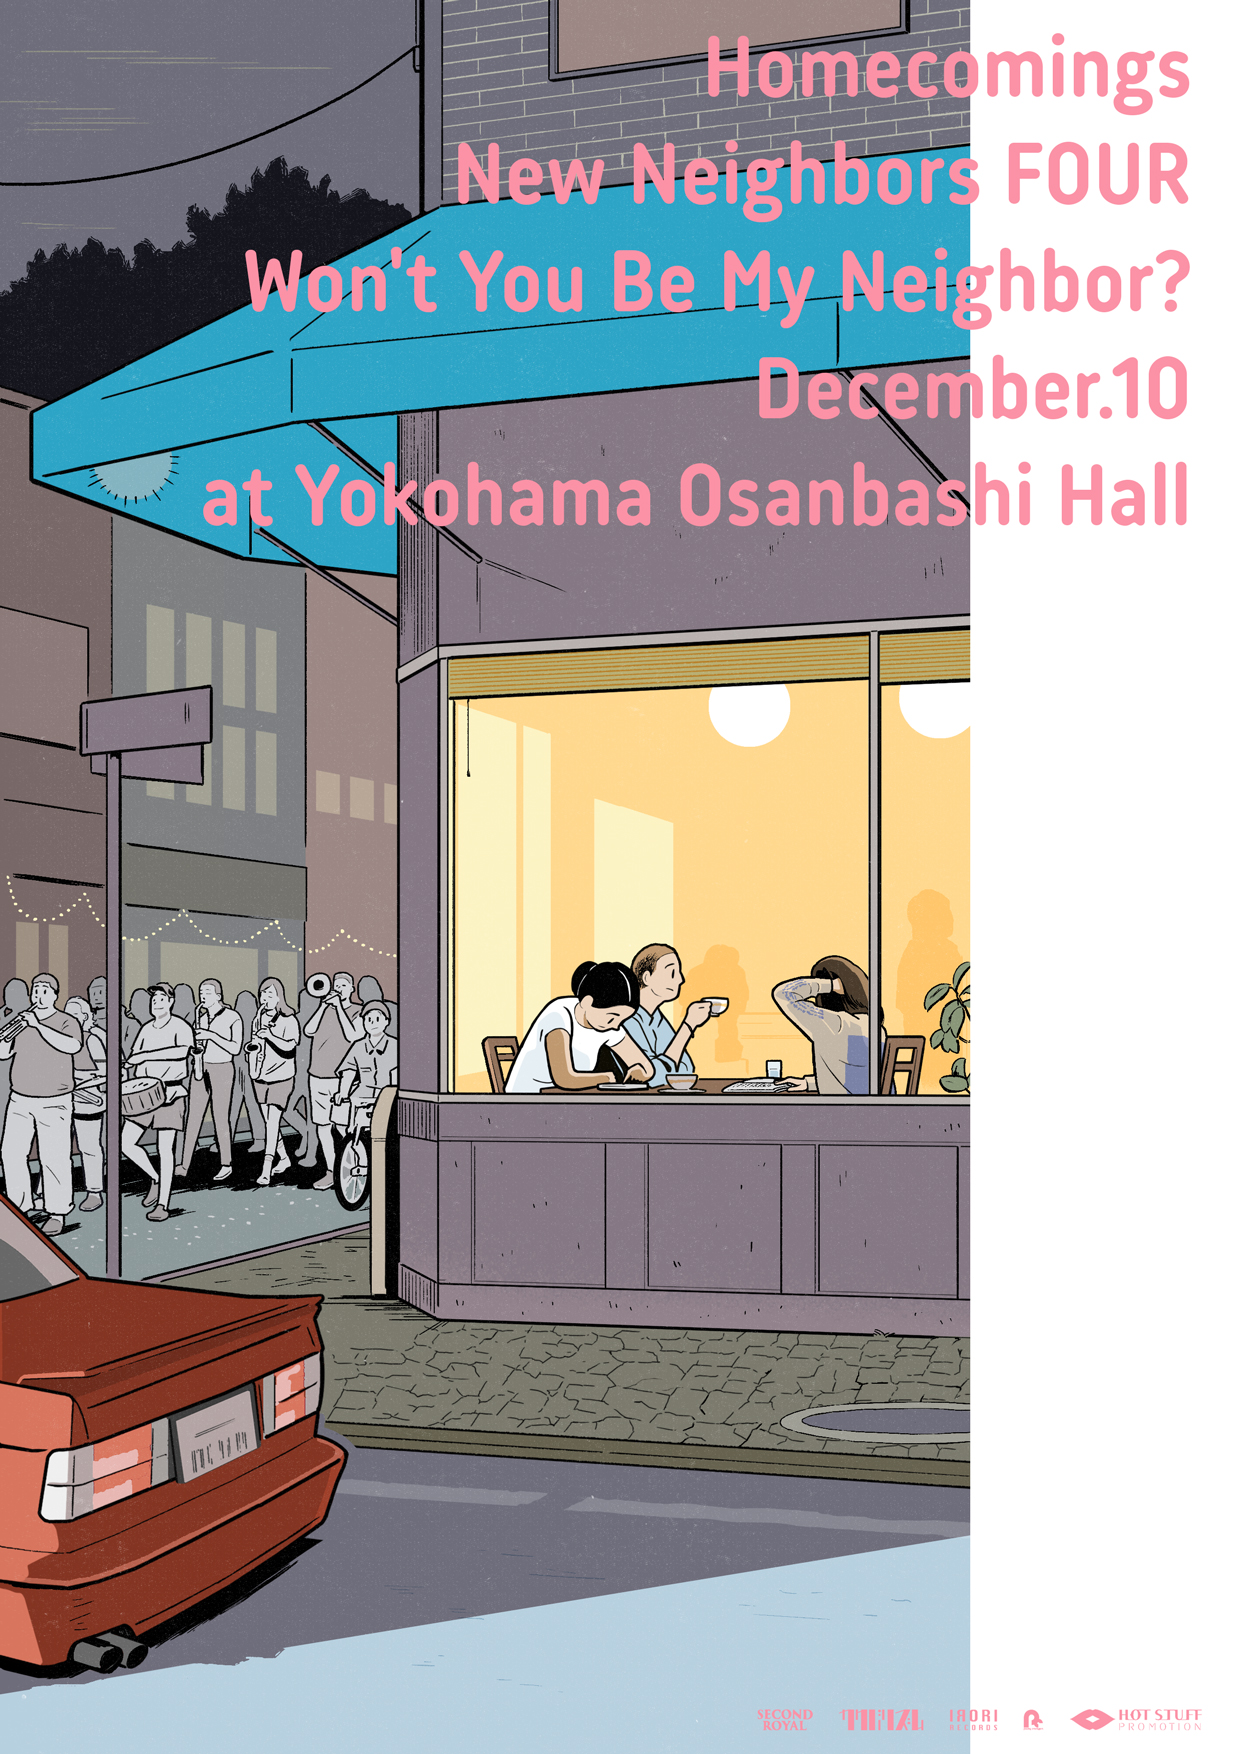 Homecomings New Neighbors FOUR Won’t You Be My Neighbor? December.10 Yokohama Osanbashi Hall